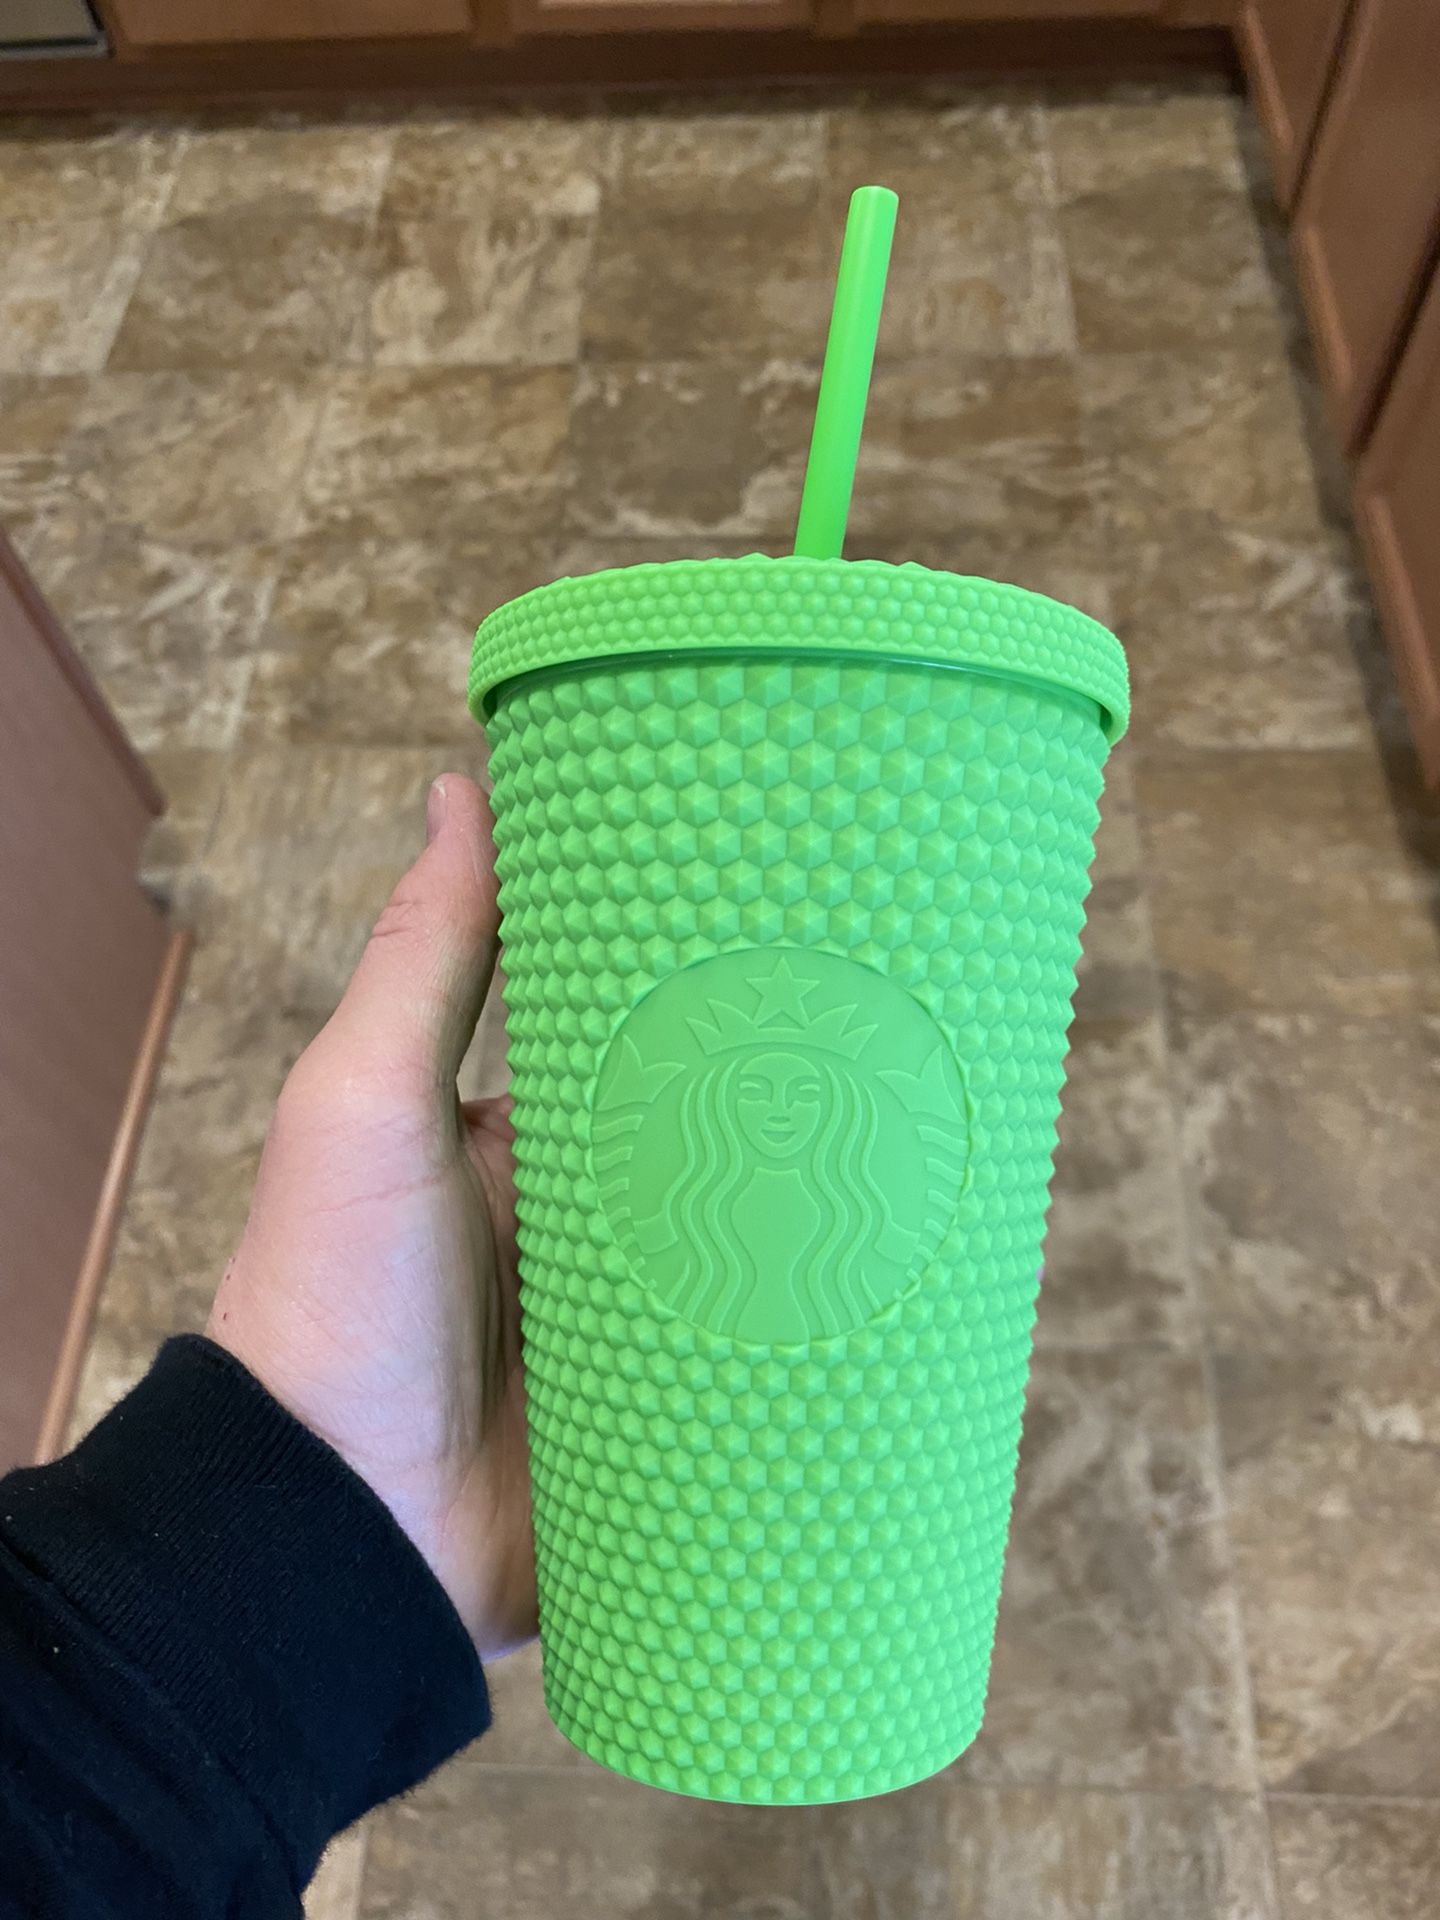 Grande Green Studded Starbucks Tumbler